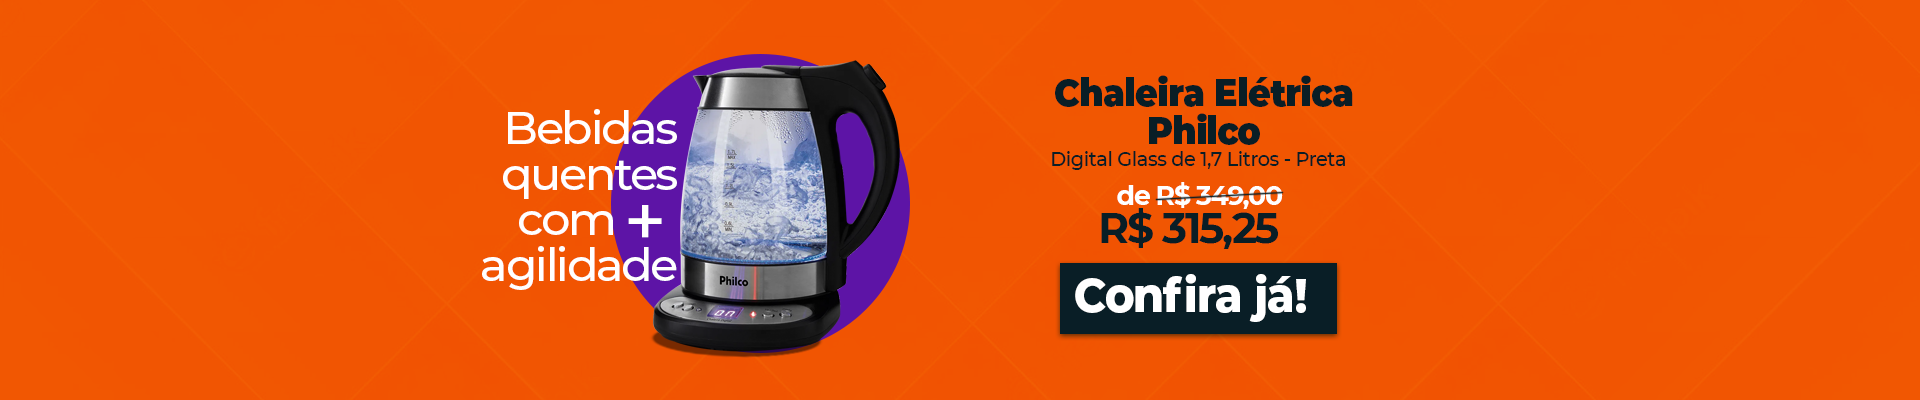 Chaleira-Eletrica-Philco-Digital-Glass-Desktop